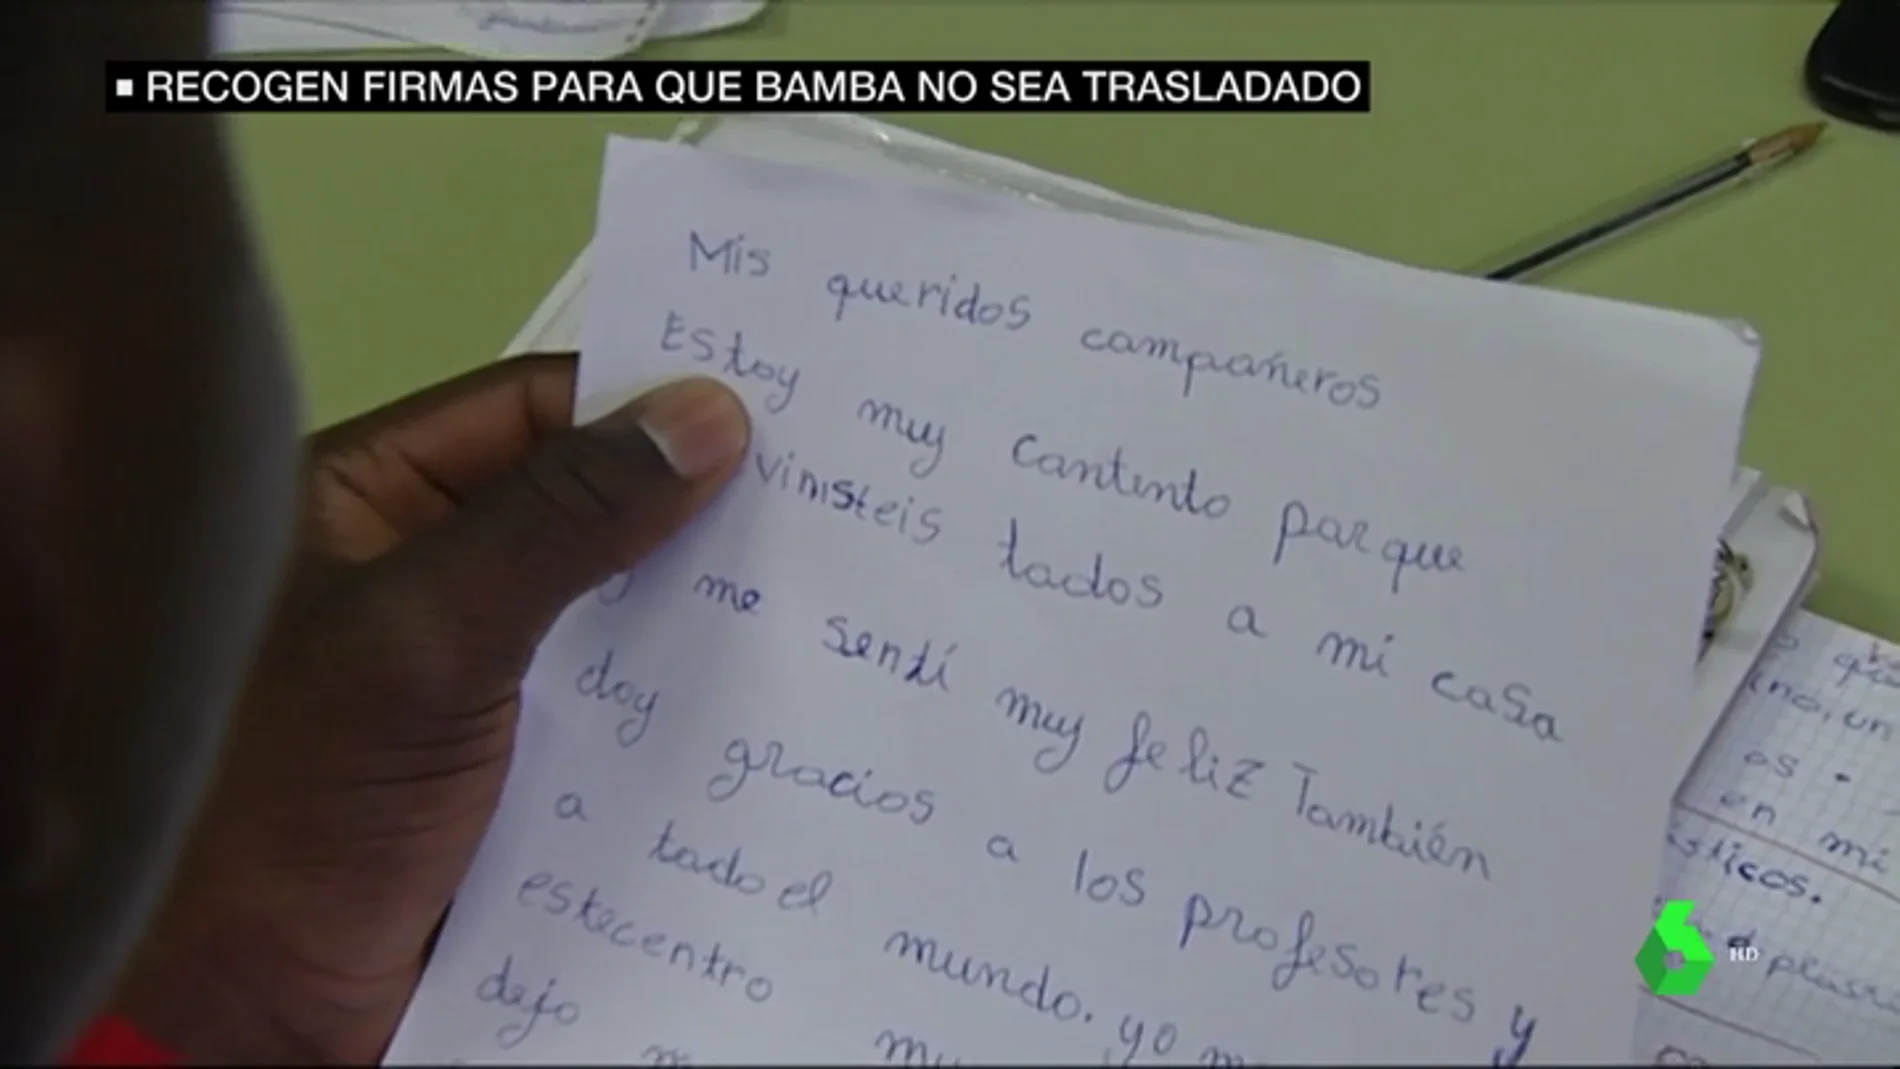 Bamba, el menor migrante que lucha por no ser trasladado a un centro de menas: "Mis compañeros son mi familia"